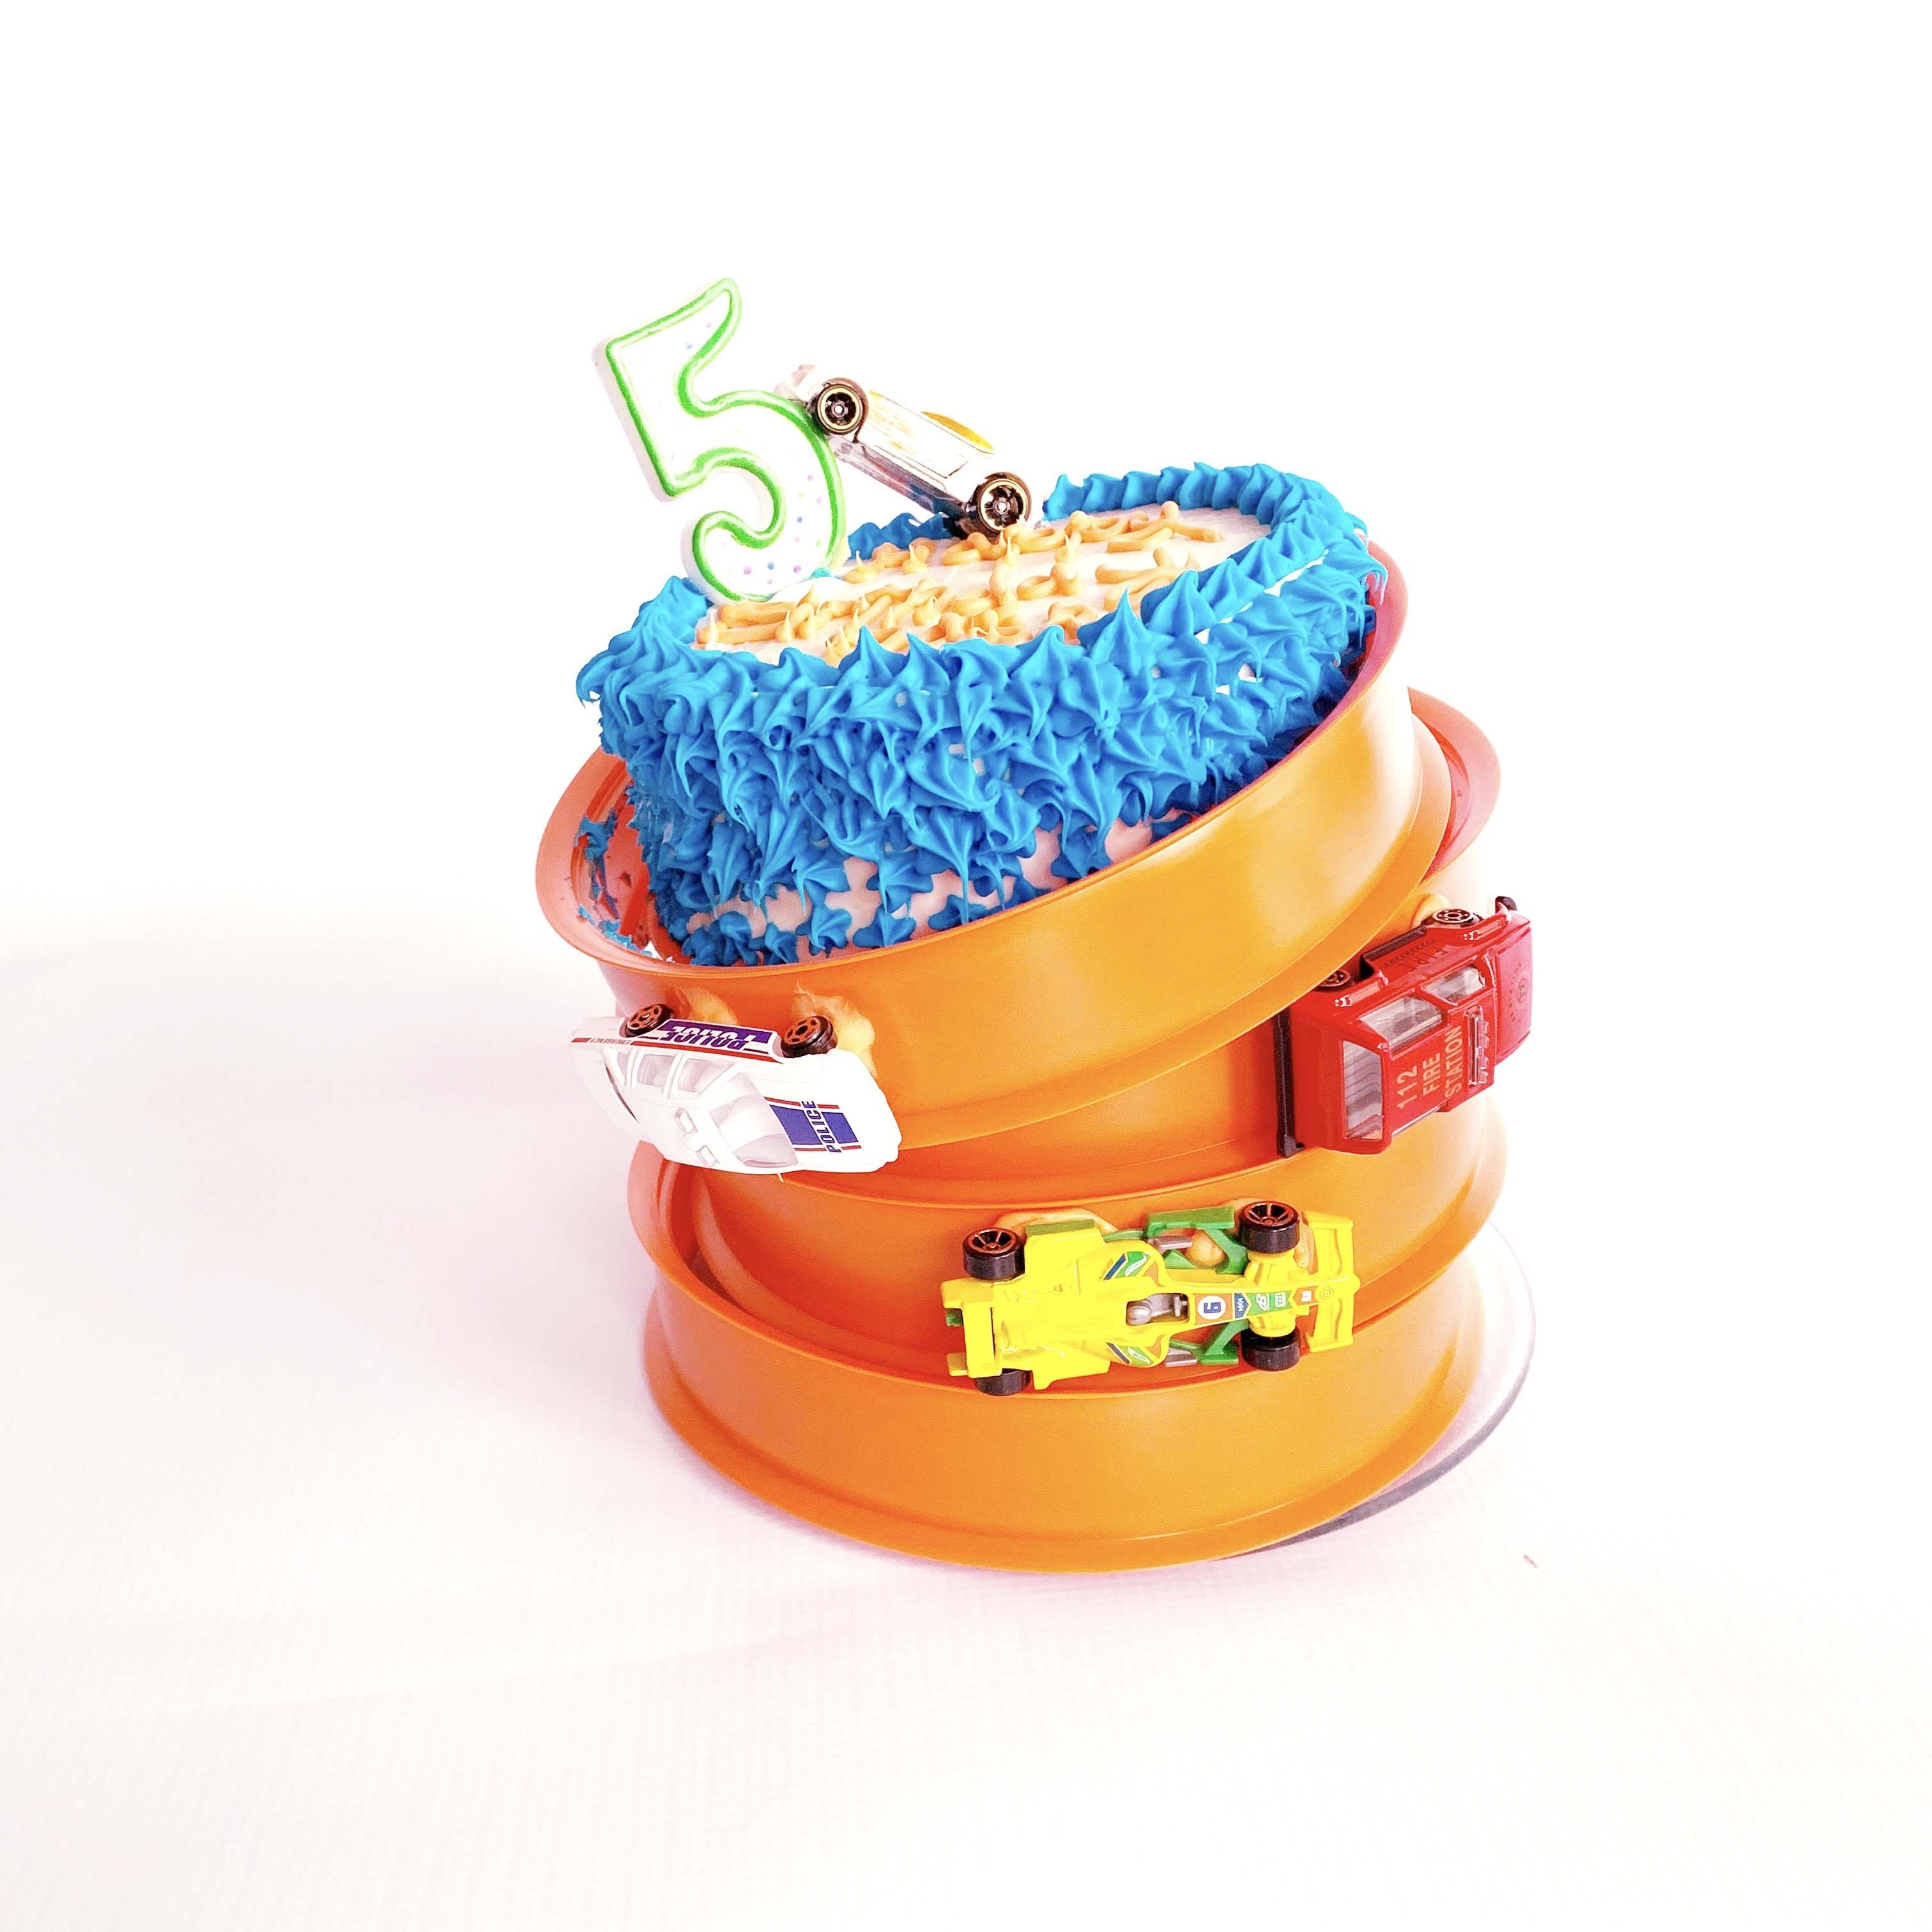 Easy hotwheels birthday cake idea